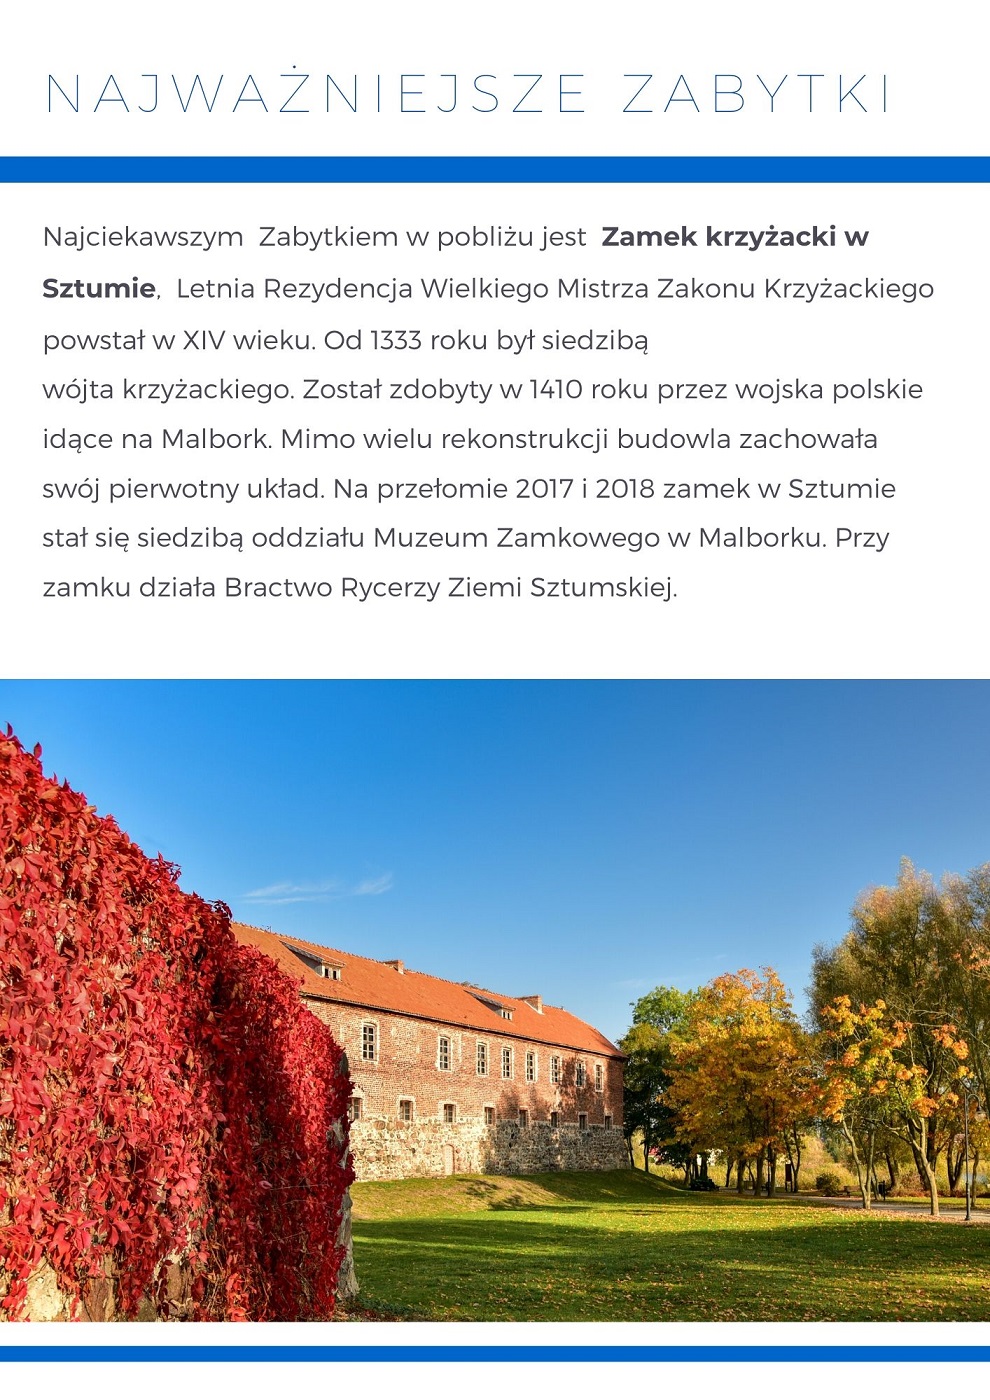 Grafika informująca o Ciekawych Miejscach - Zamek Krzyżacki